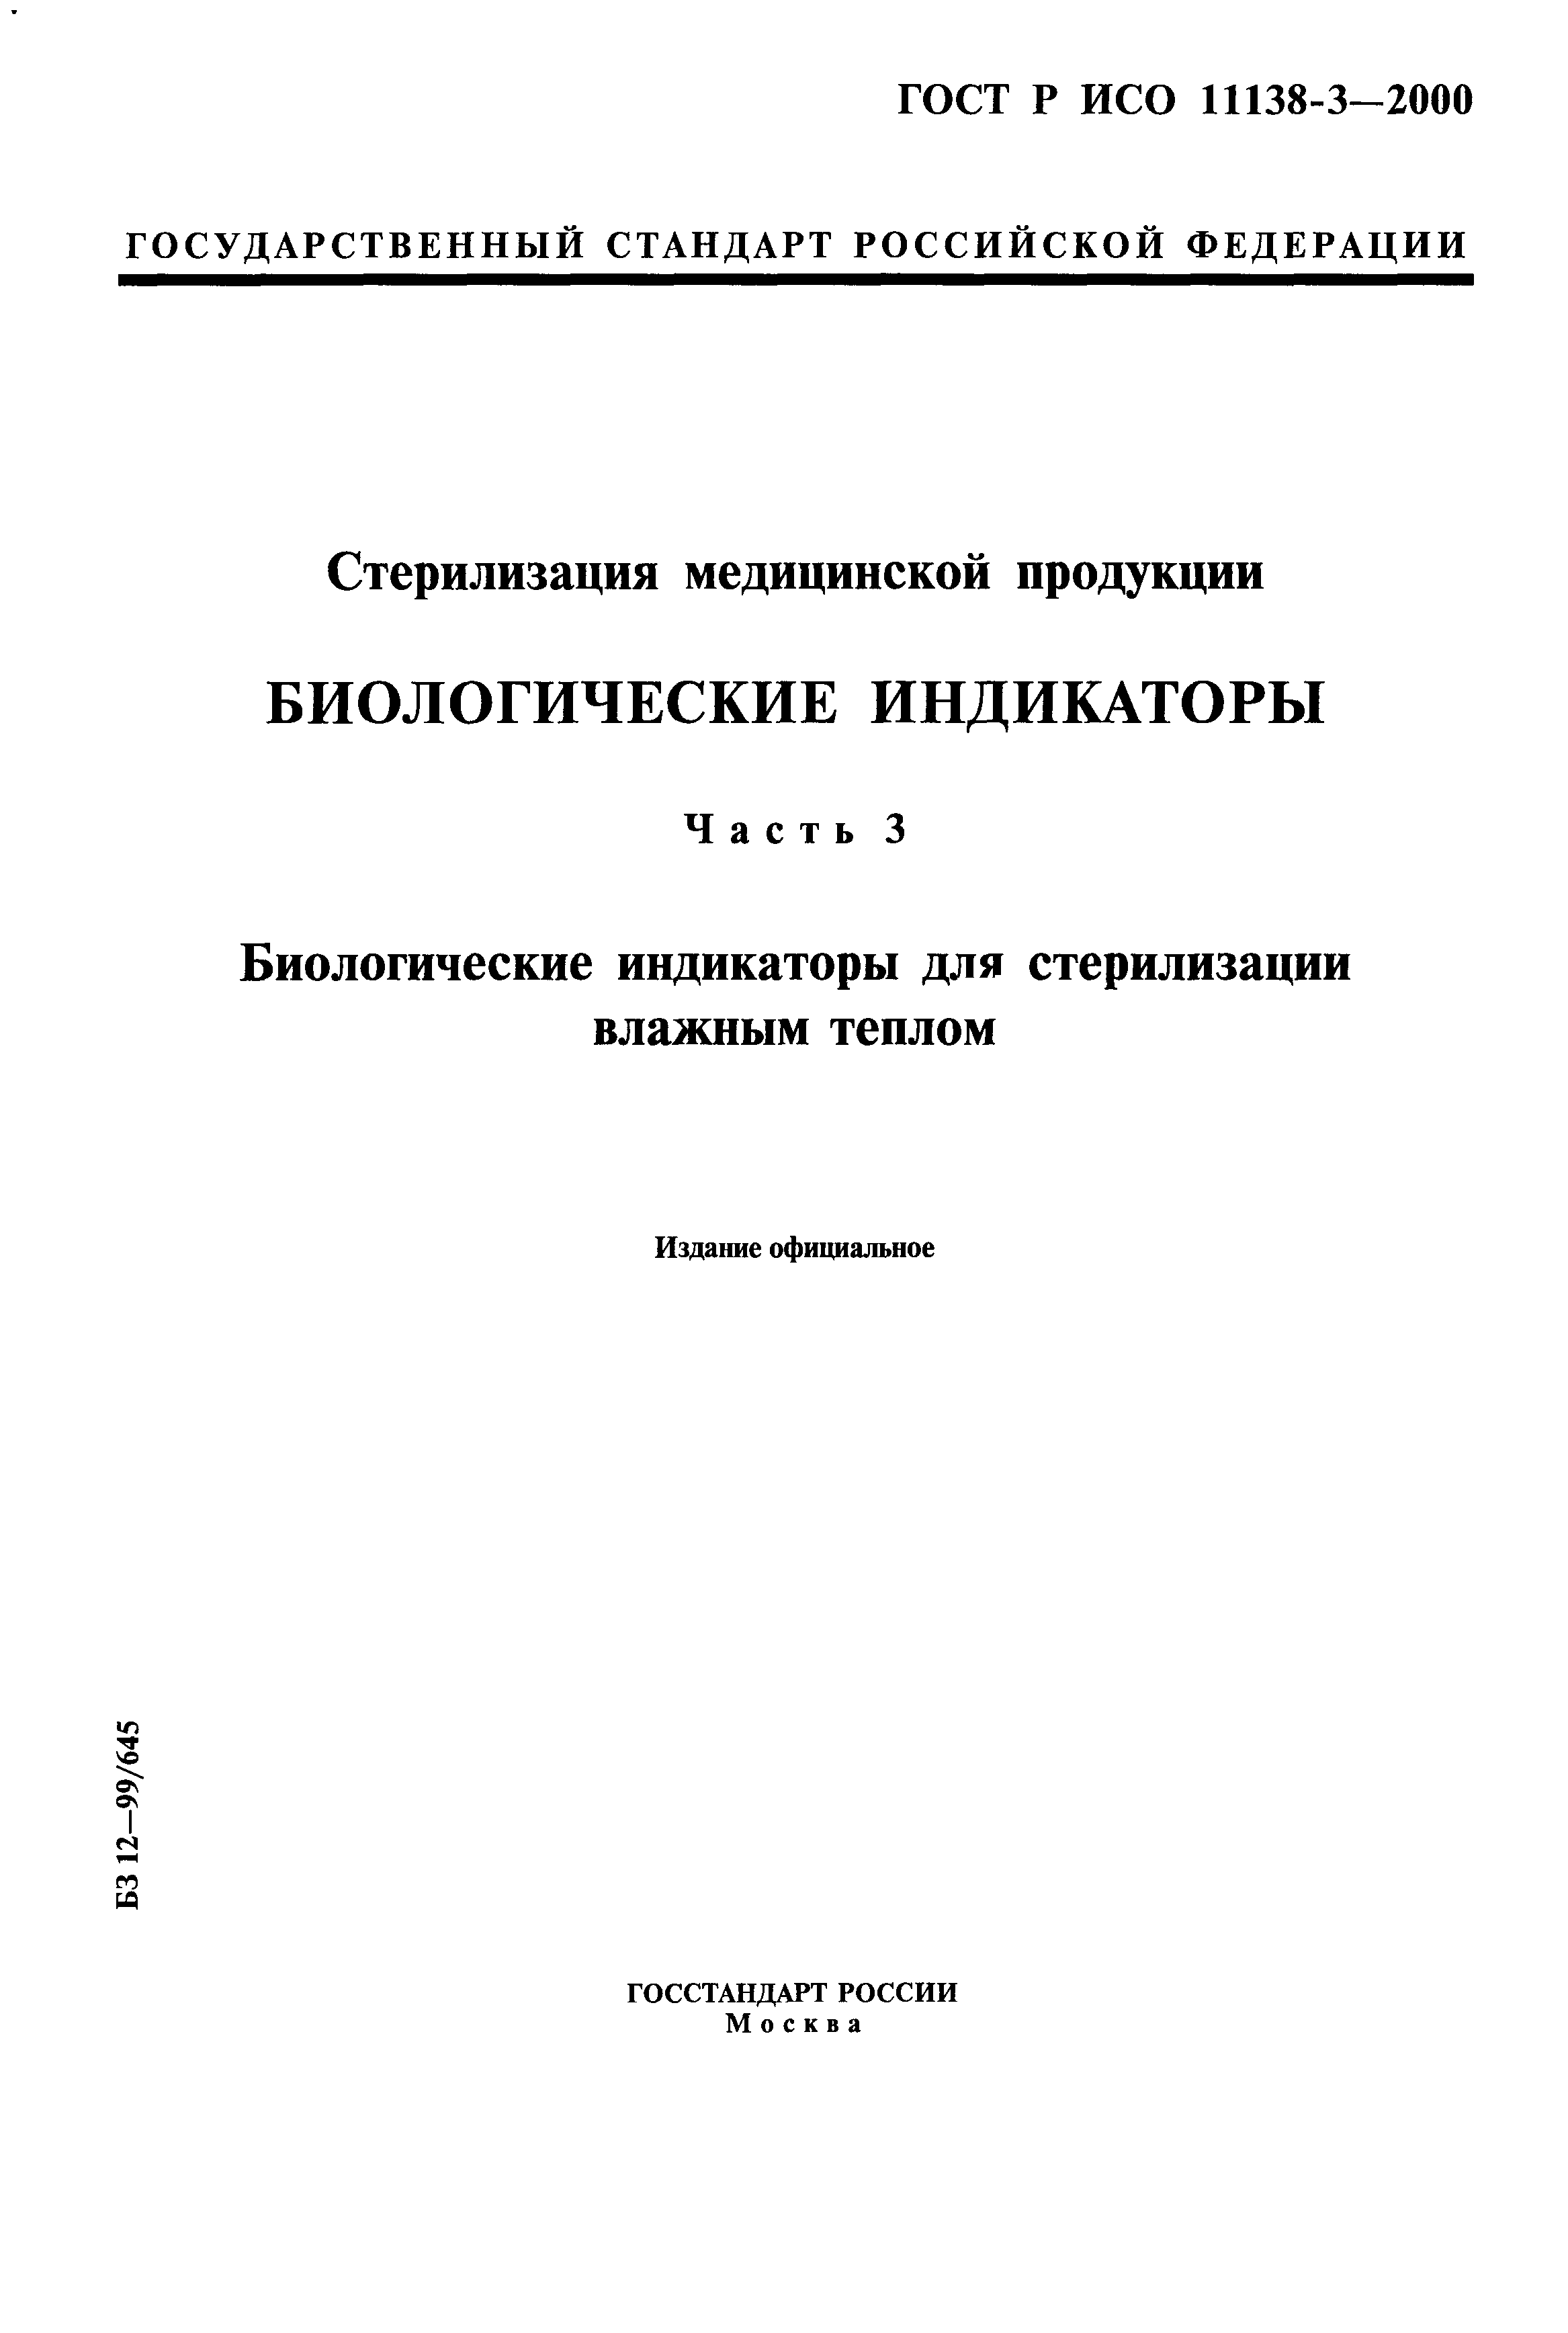 ГОСТ Р ИСО 11138-3-2000